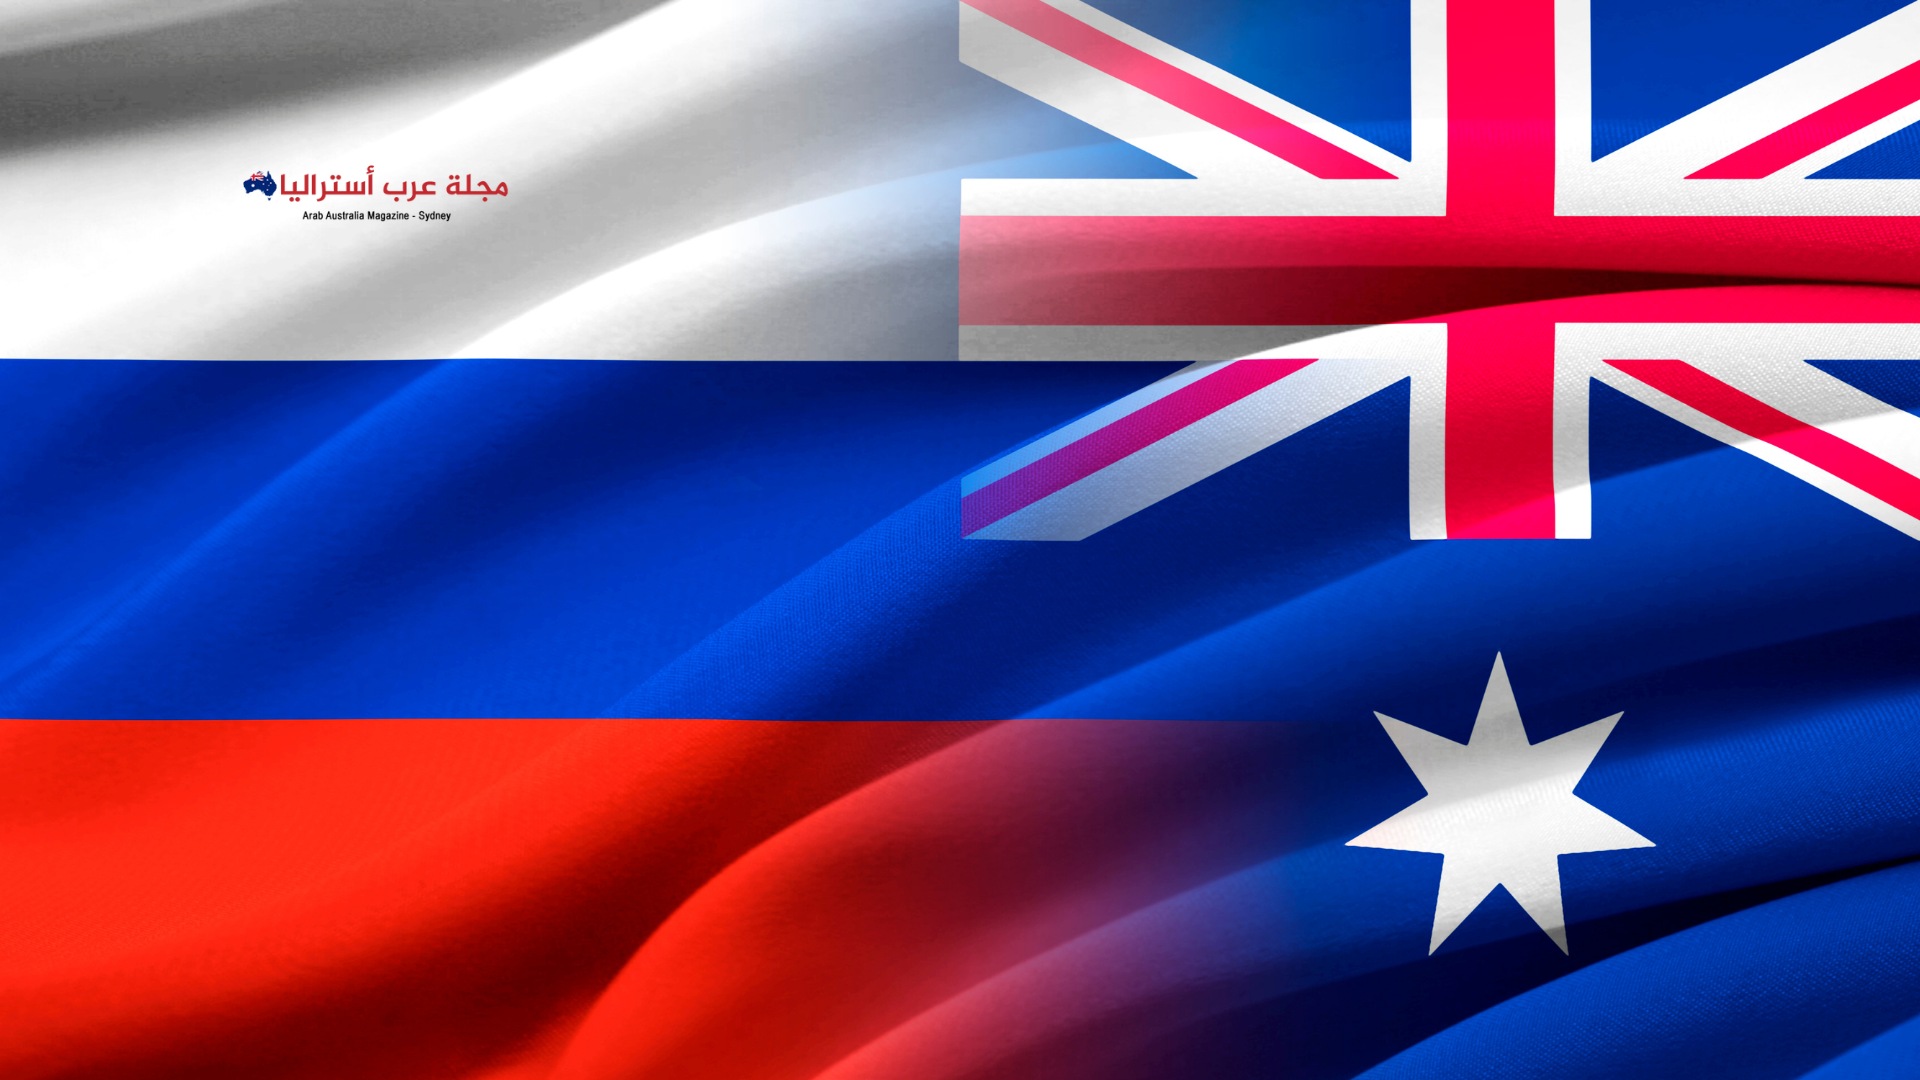 أستراليا تفرض عقوبات على 35 كيانًا روسيا و10 أفراد روس وبيلاروسيين